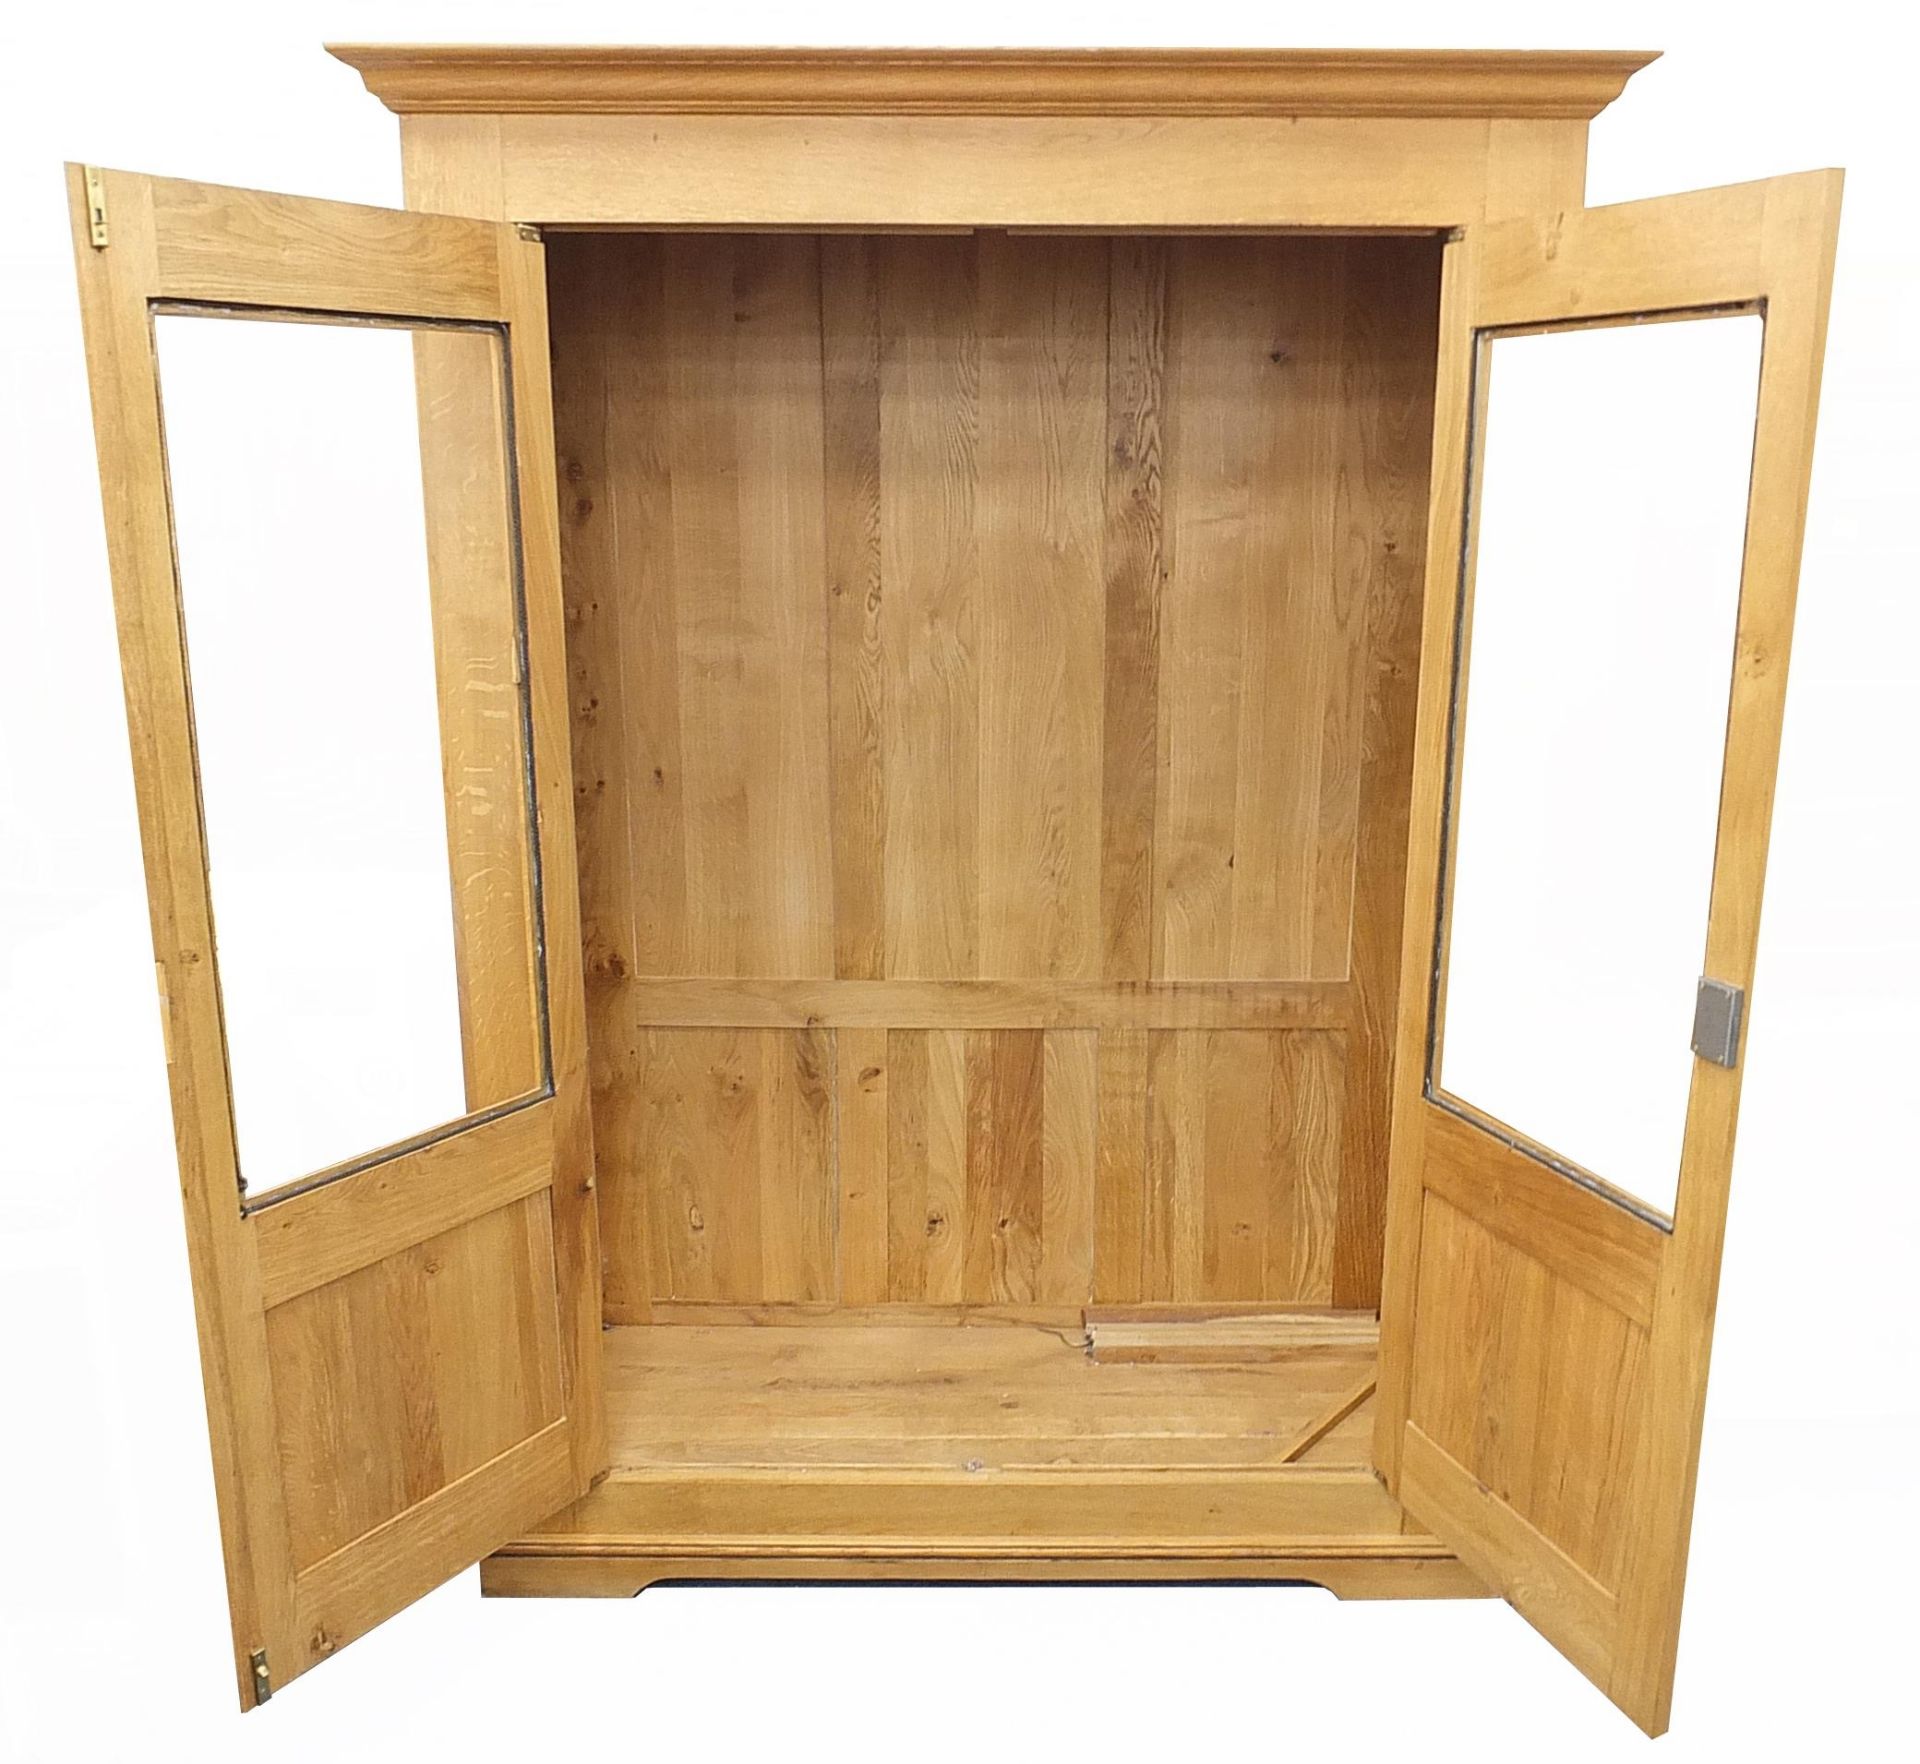 Large contemporary light oak bookcase, 200cm H x 150cm W x 62cm D - Image 2 of 3